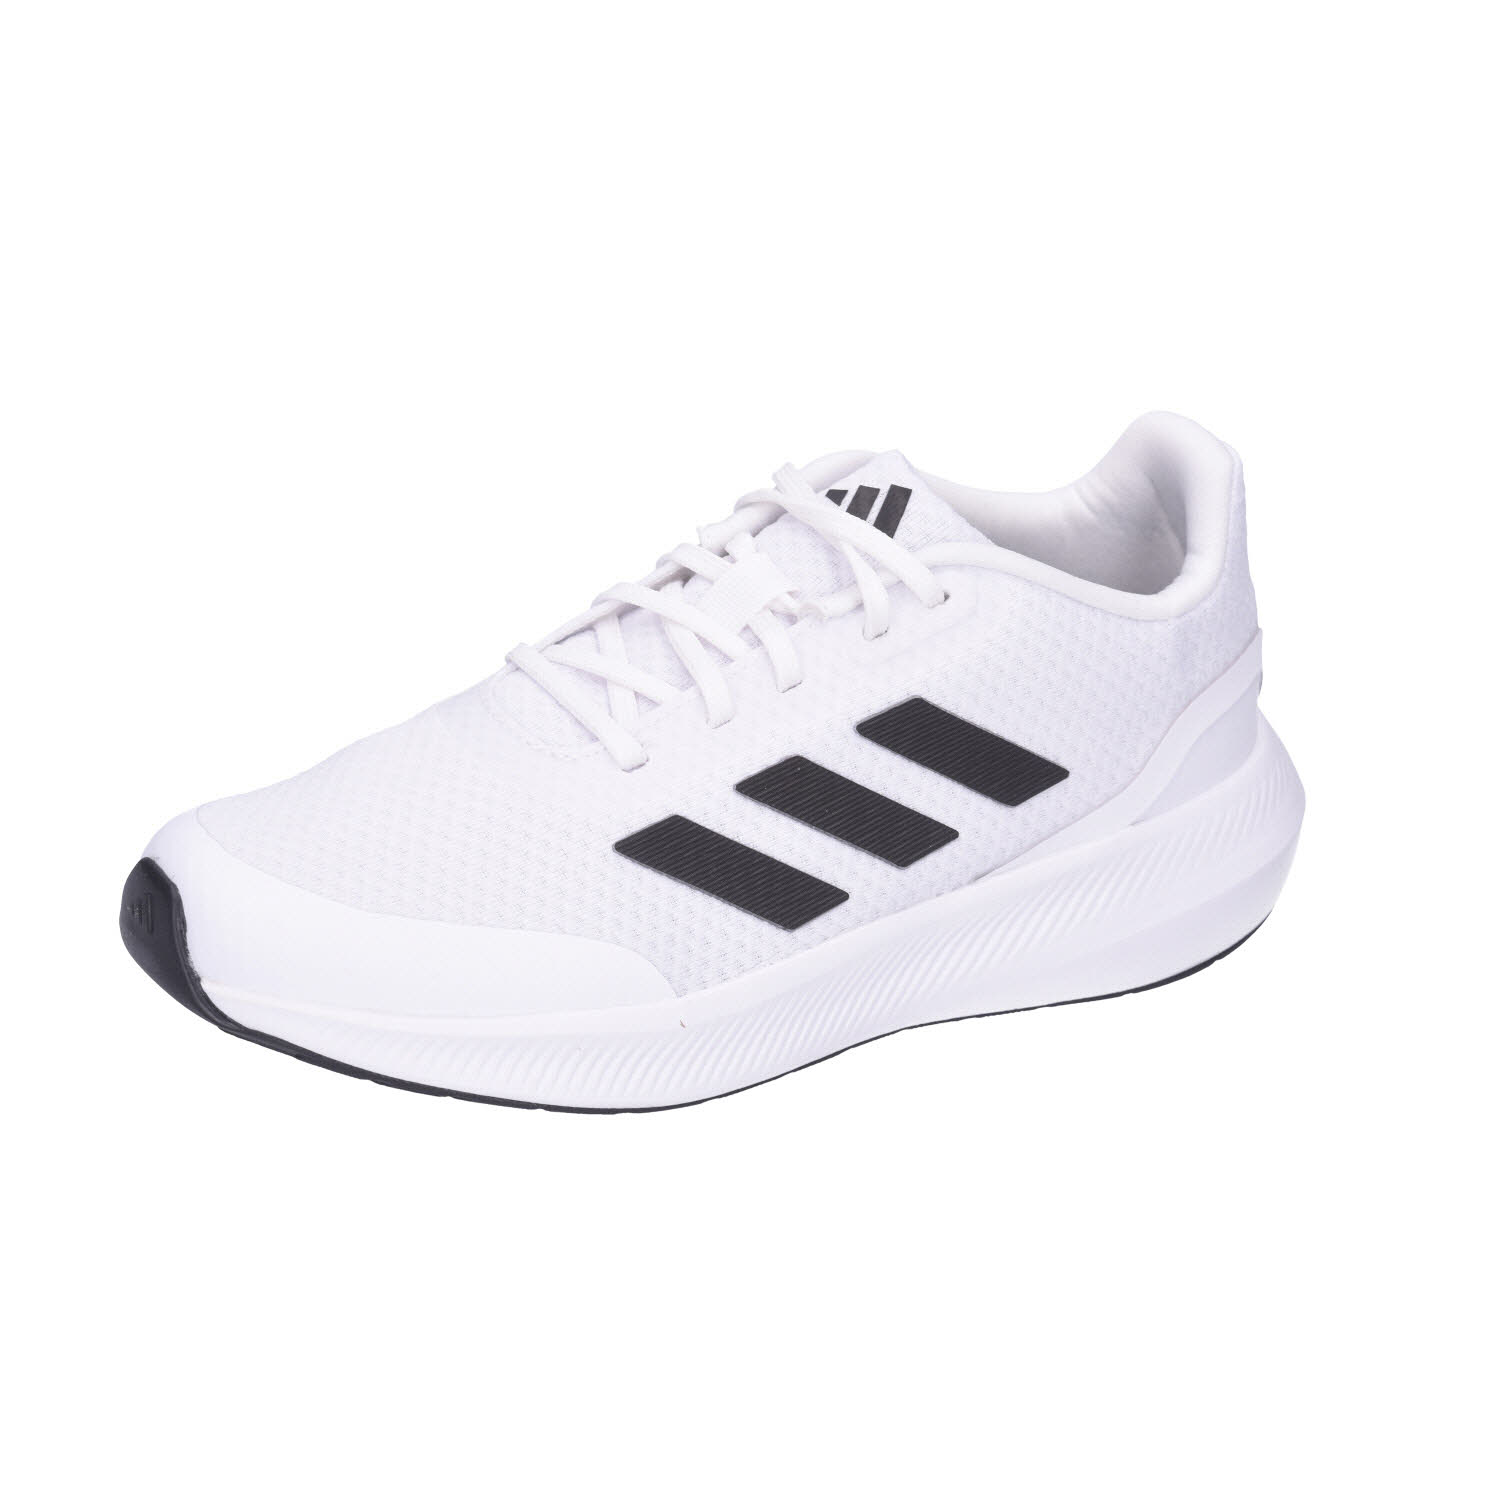 Adidas Runfalcon 3.0 Kids White/Black weiß